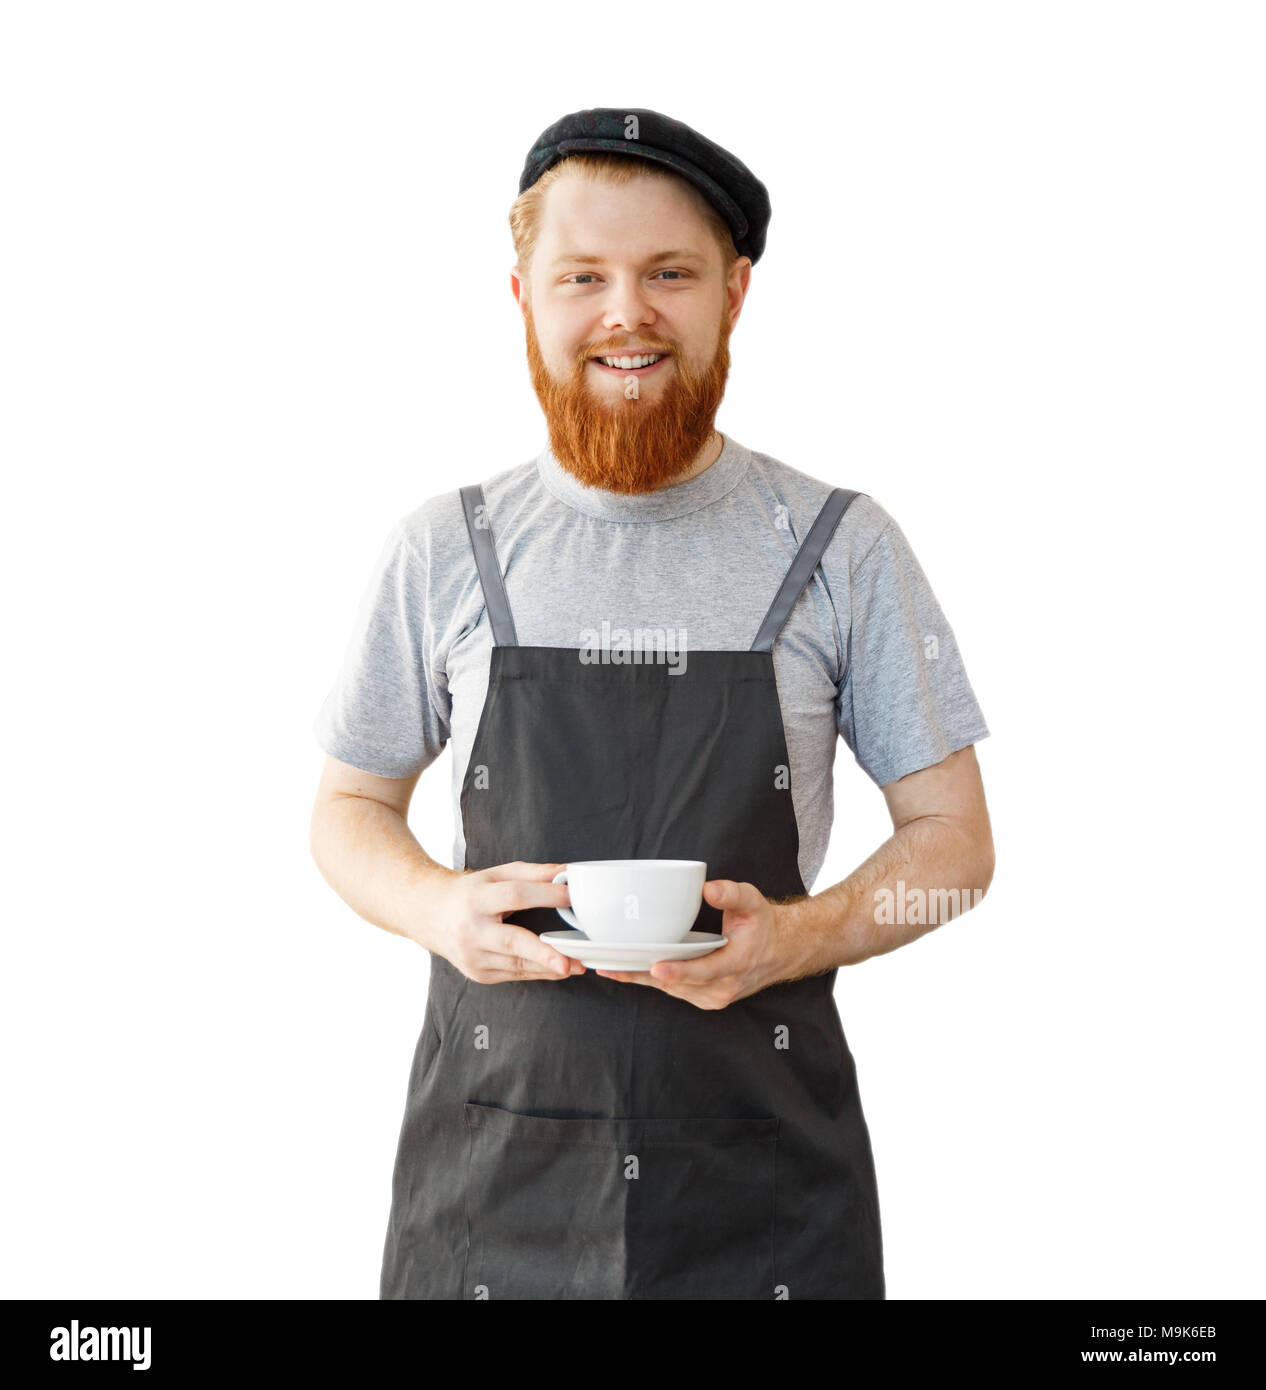 Kaffee Business Owner Konzept - Porträt der glückliche junge Bartgeier kaukasischen Barista in Schürze mit zuversichtlich Suche Wartung heißen Kaffee an Kunden im Coffee Shop. Stockfoto